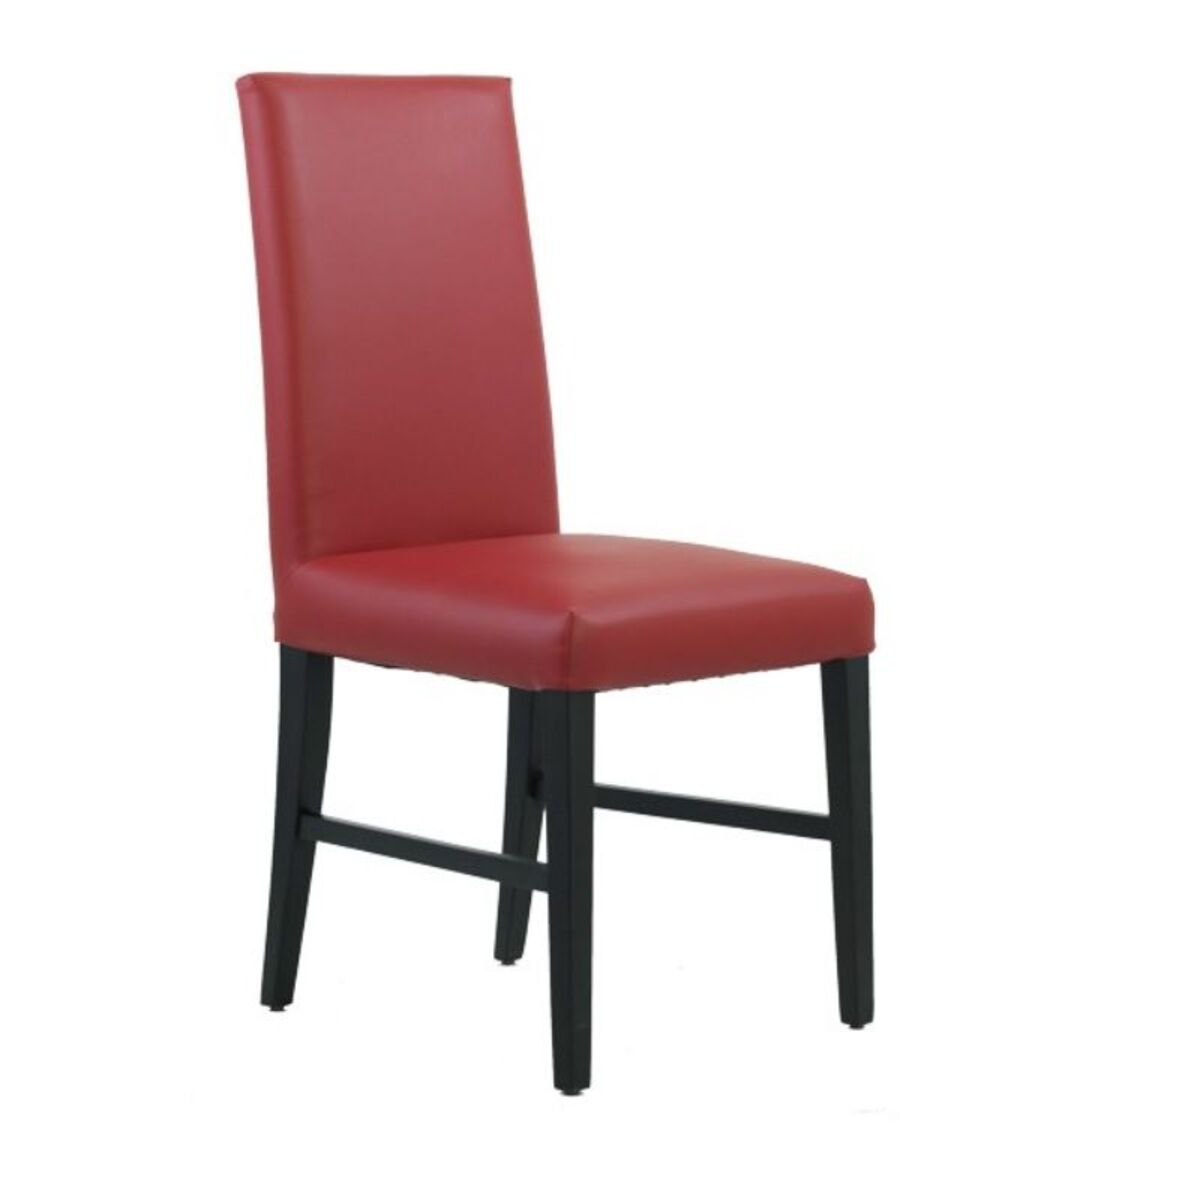 Chaise de restaurant avec dossier haut en bois hêtre simili cuir coloris rouge